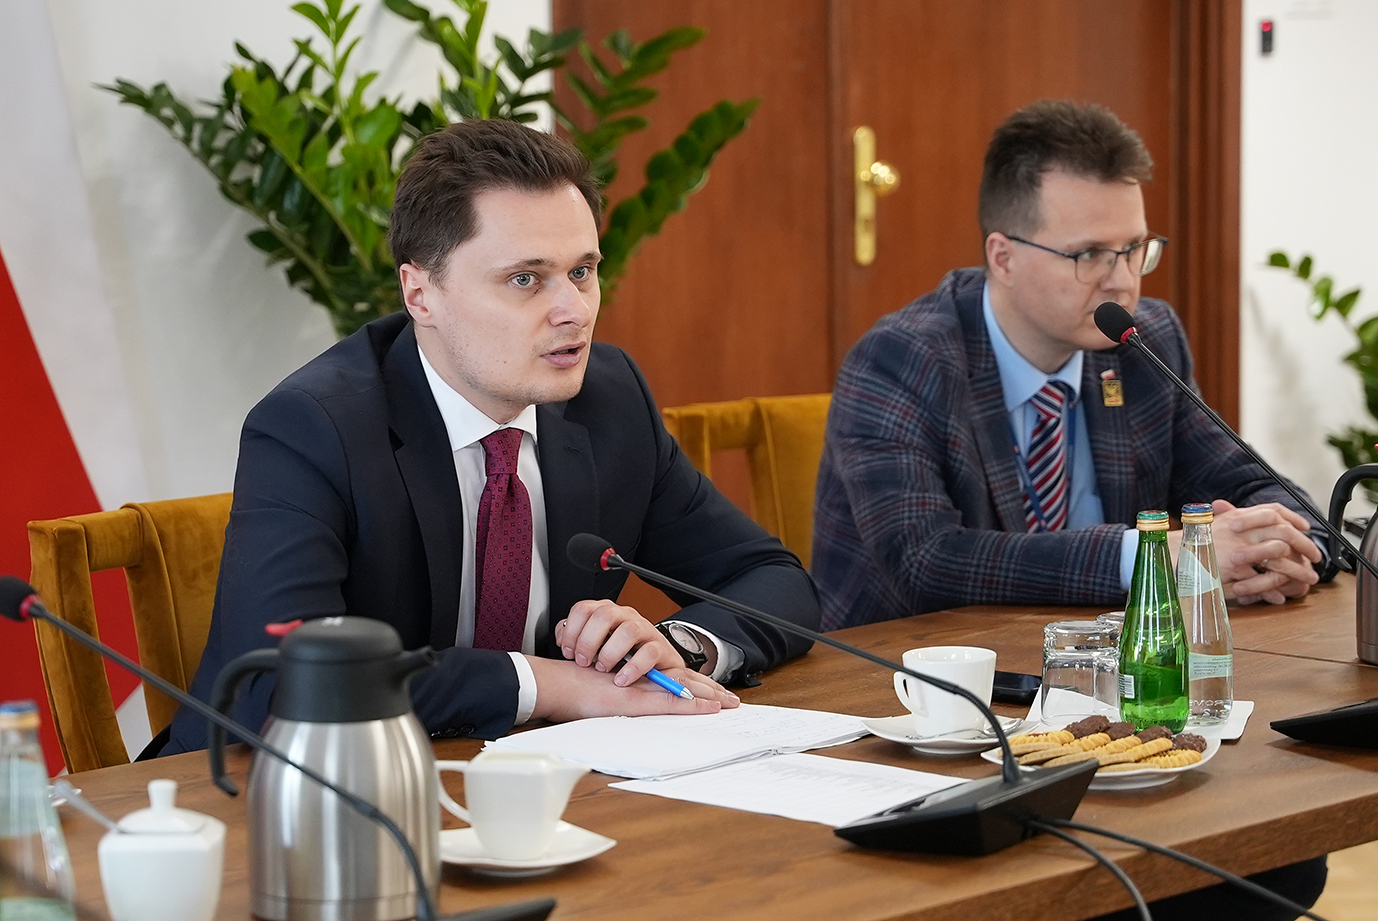 Podsekretarz stanu Krzysztof Cieciura podczas wypowiedzi (fot. MRiRW)